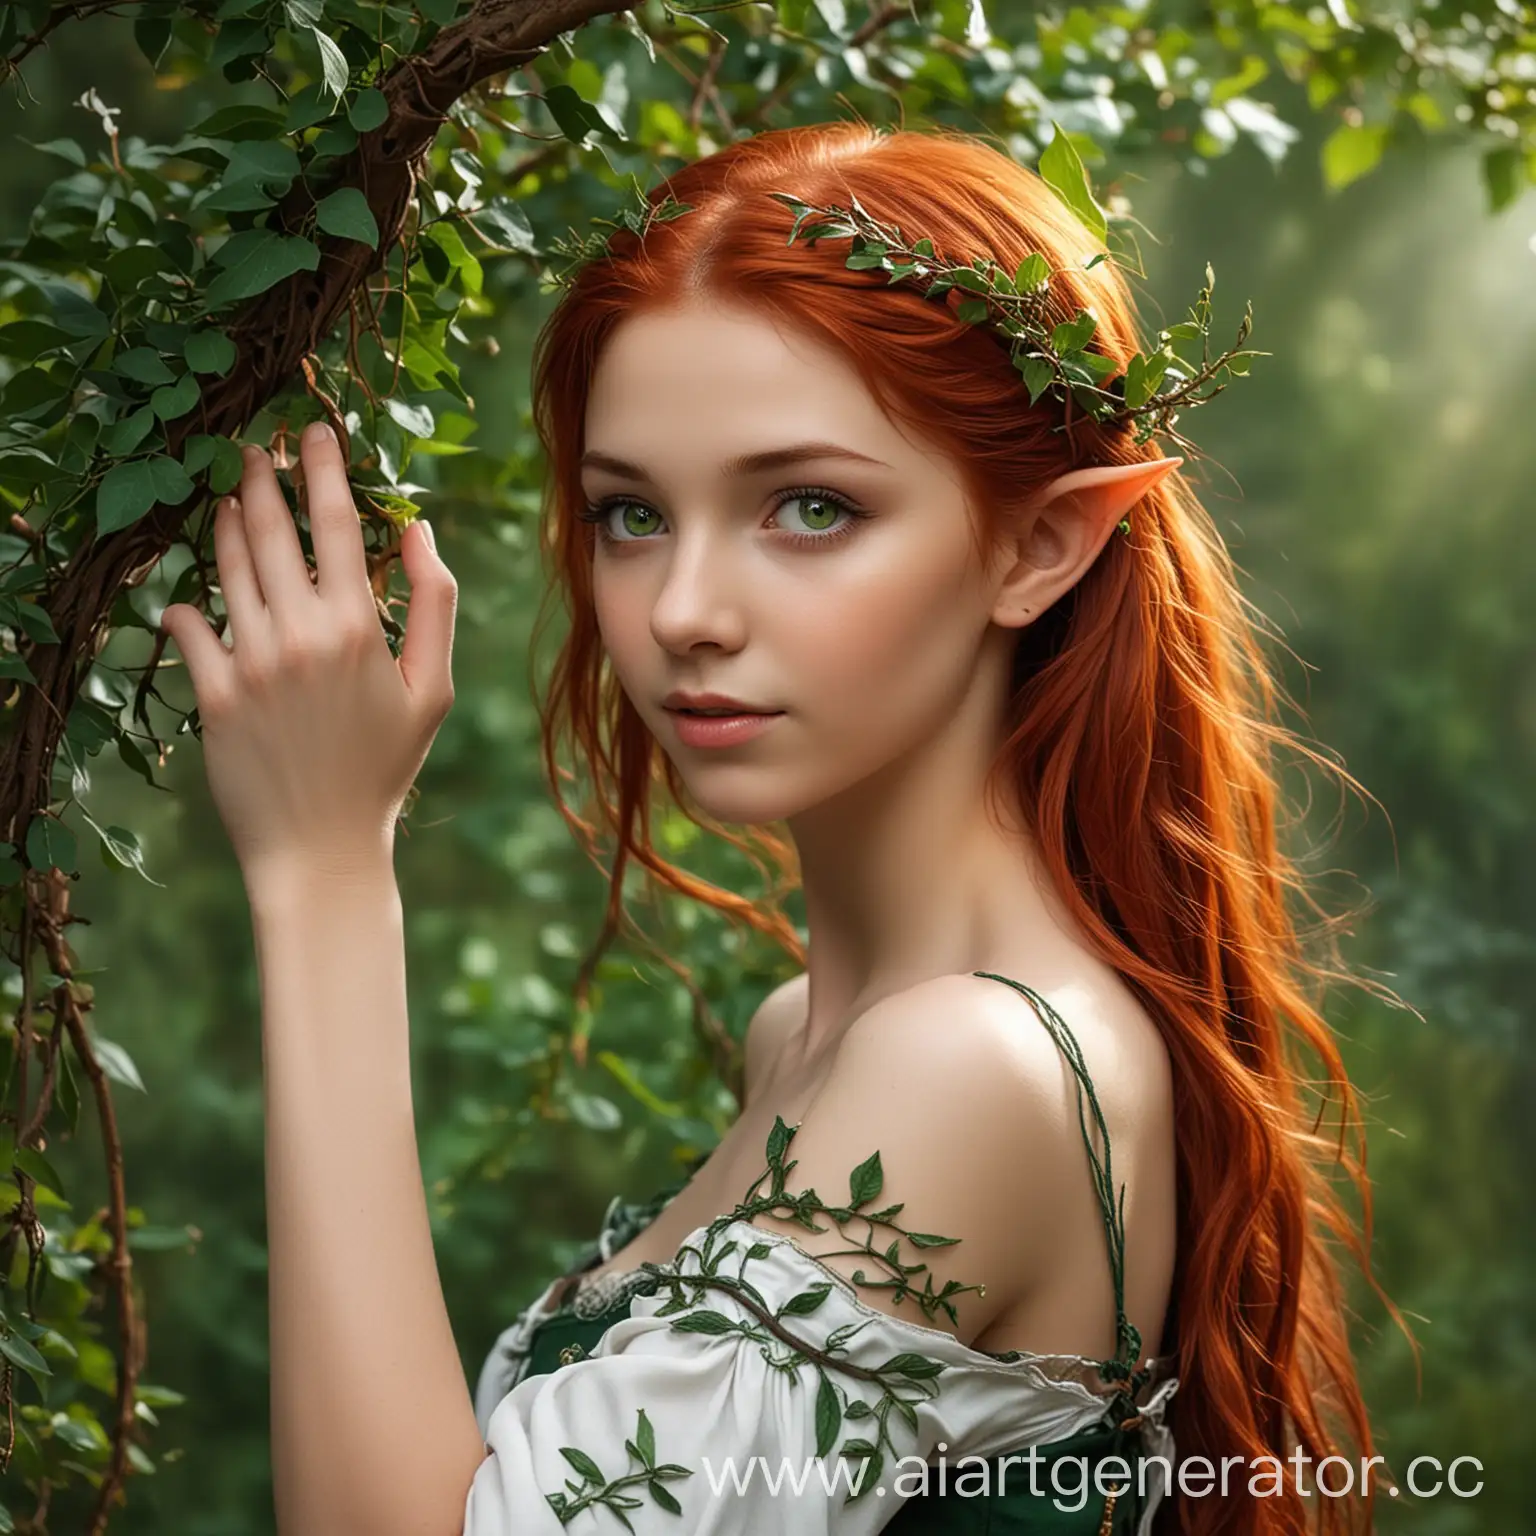 девушка 19 лет, полуэльф, рыжие волосы, зеленые глаза, стройная, среднего роста, уши эльфа,красивая арабеска из переплетенных ветвей и листьев покрывающая ее плечо и спускающаяся на предплечье